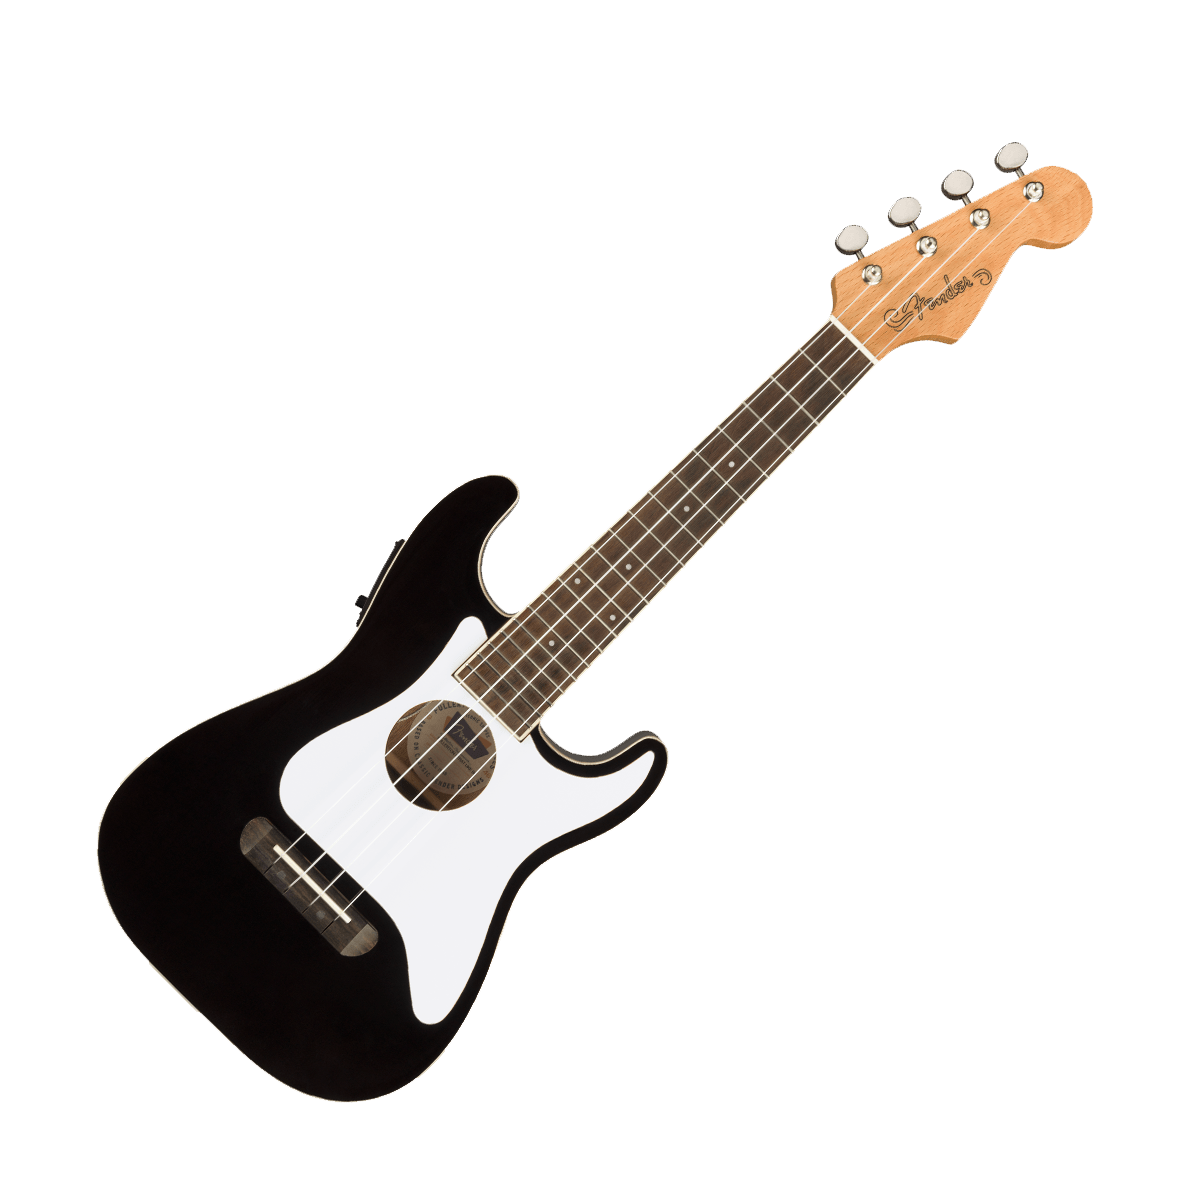 Fender Guitar Fender Fullerton Strat Ukulele Black with Pickup - Byron Music